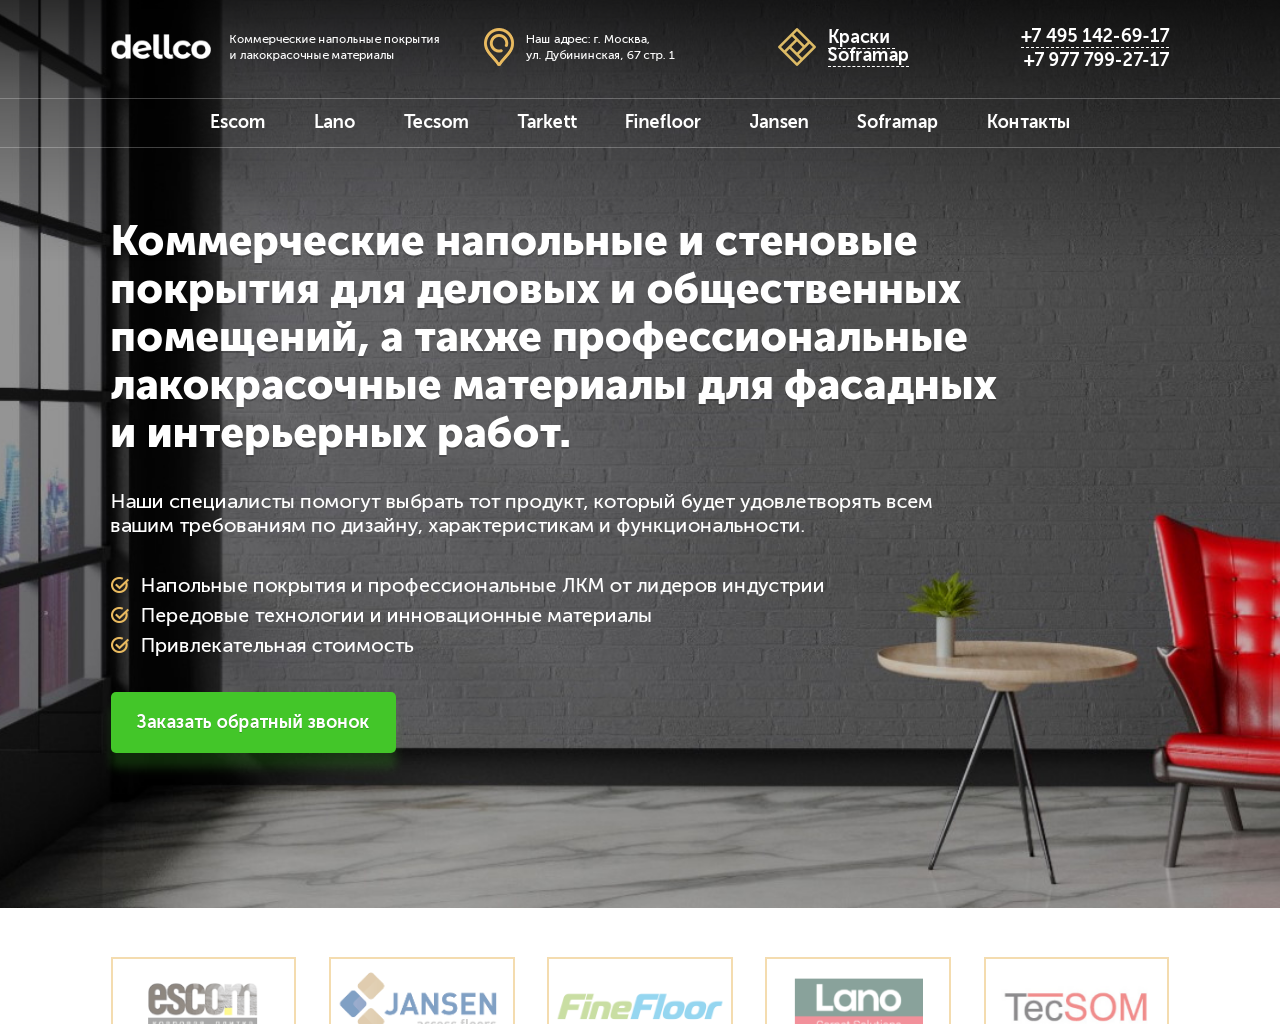 Изображение сайта dellco.ru в разрешении 1280x1024